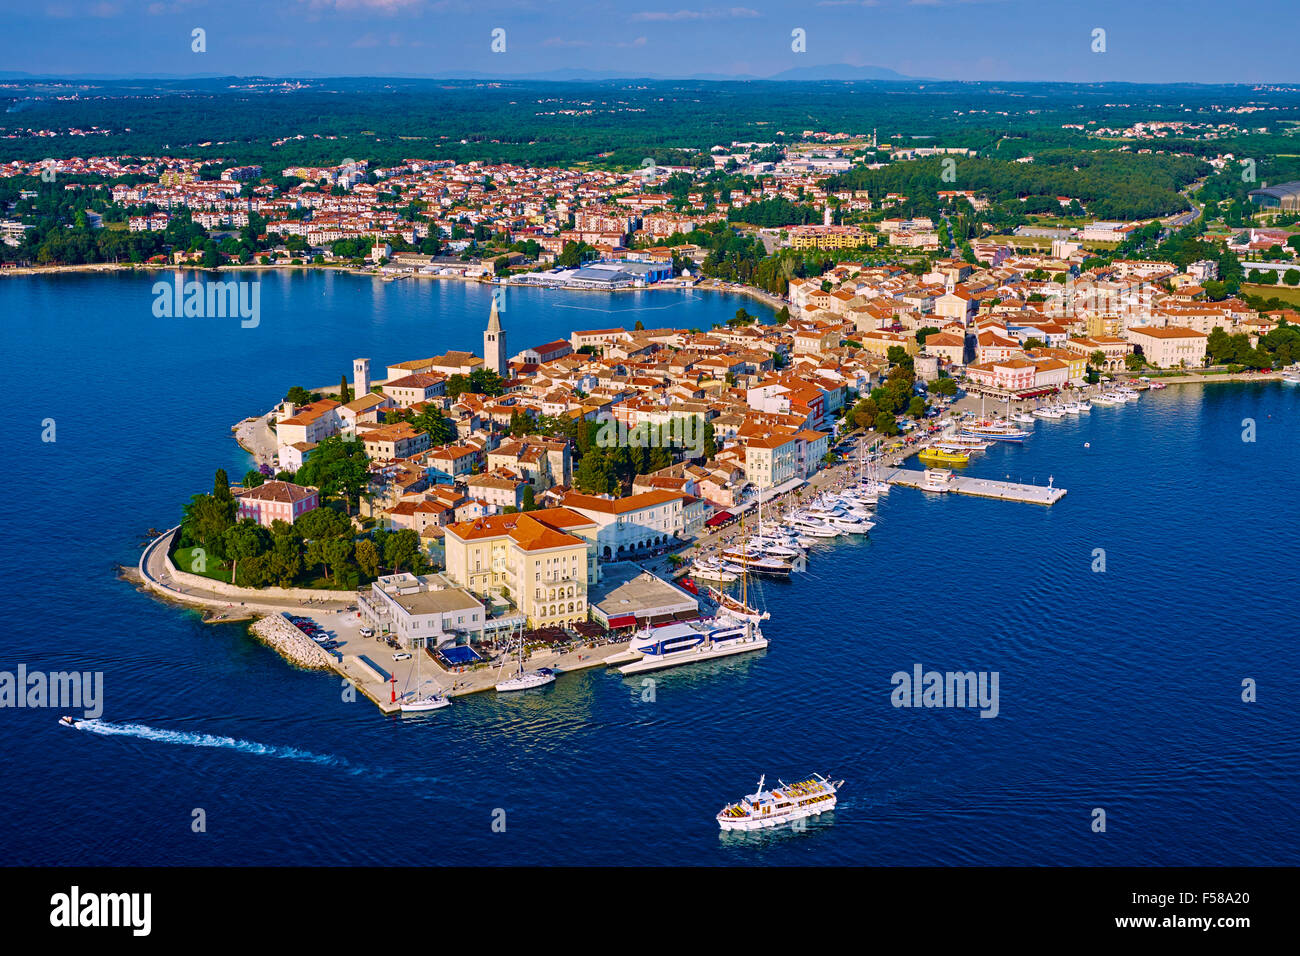 Croatia, Adriatic coast, Istria, village of Porec, aerial view Stock Photo